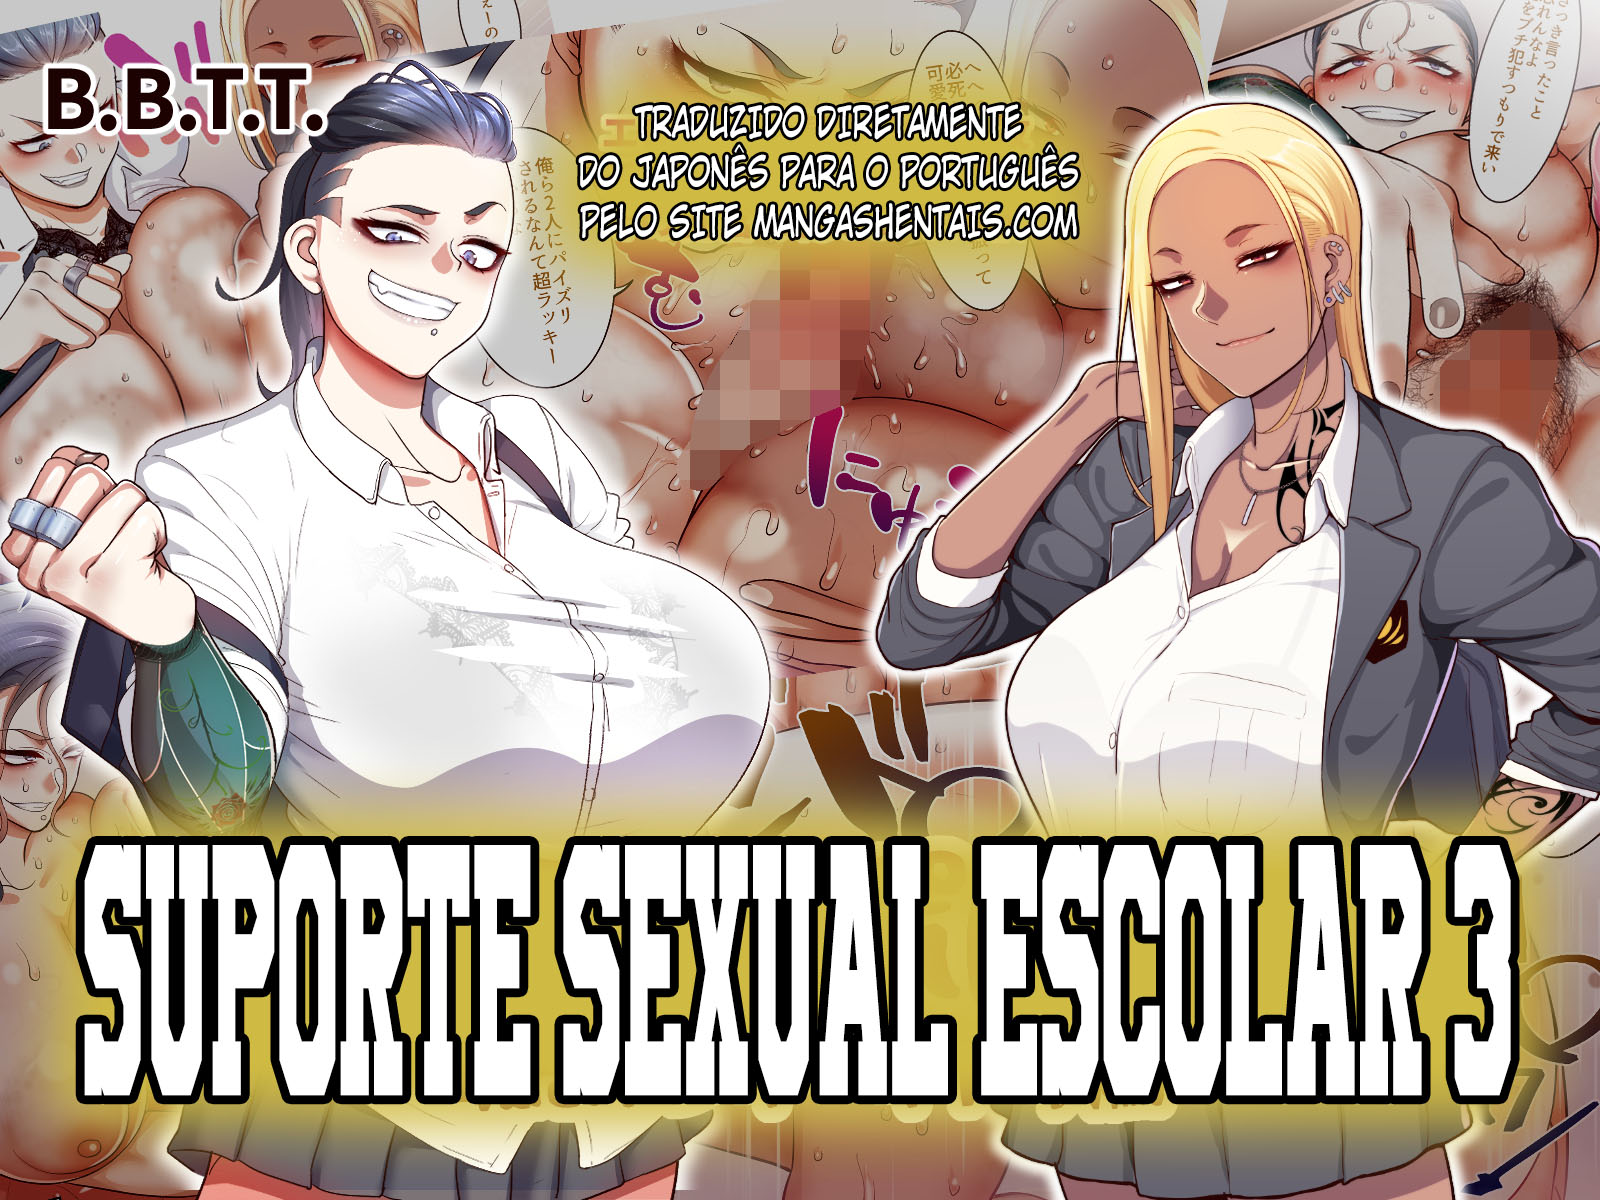 Suporte Sexual Escolar 3